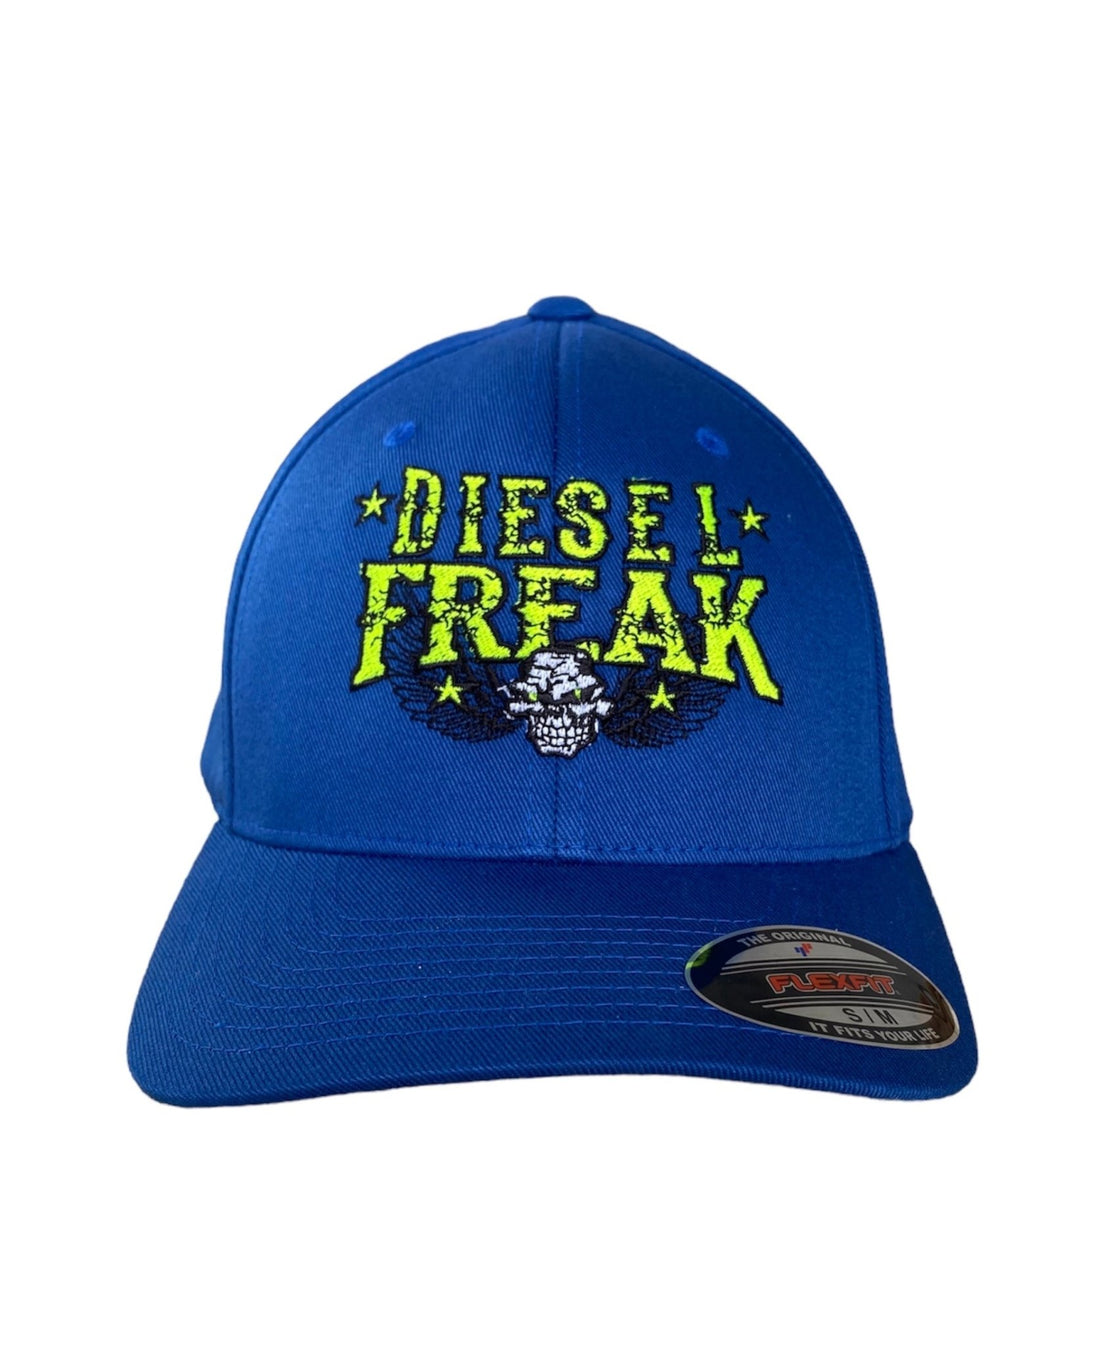 Power and Performance Hat - Diesel Freak